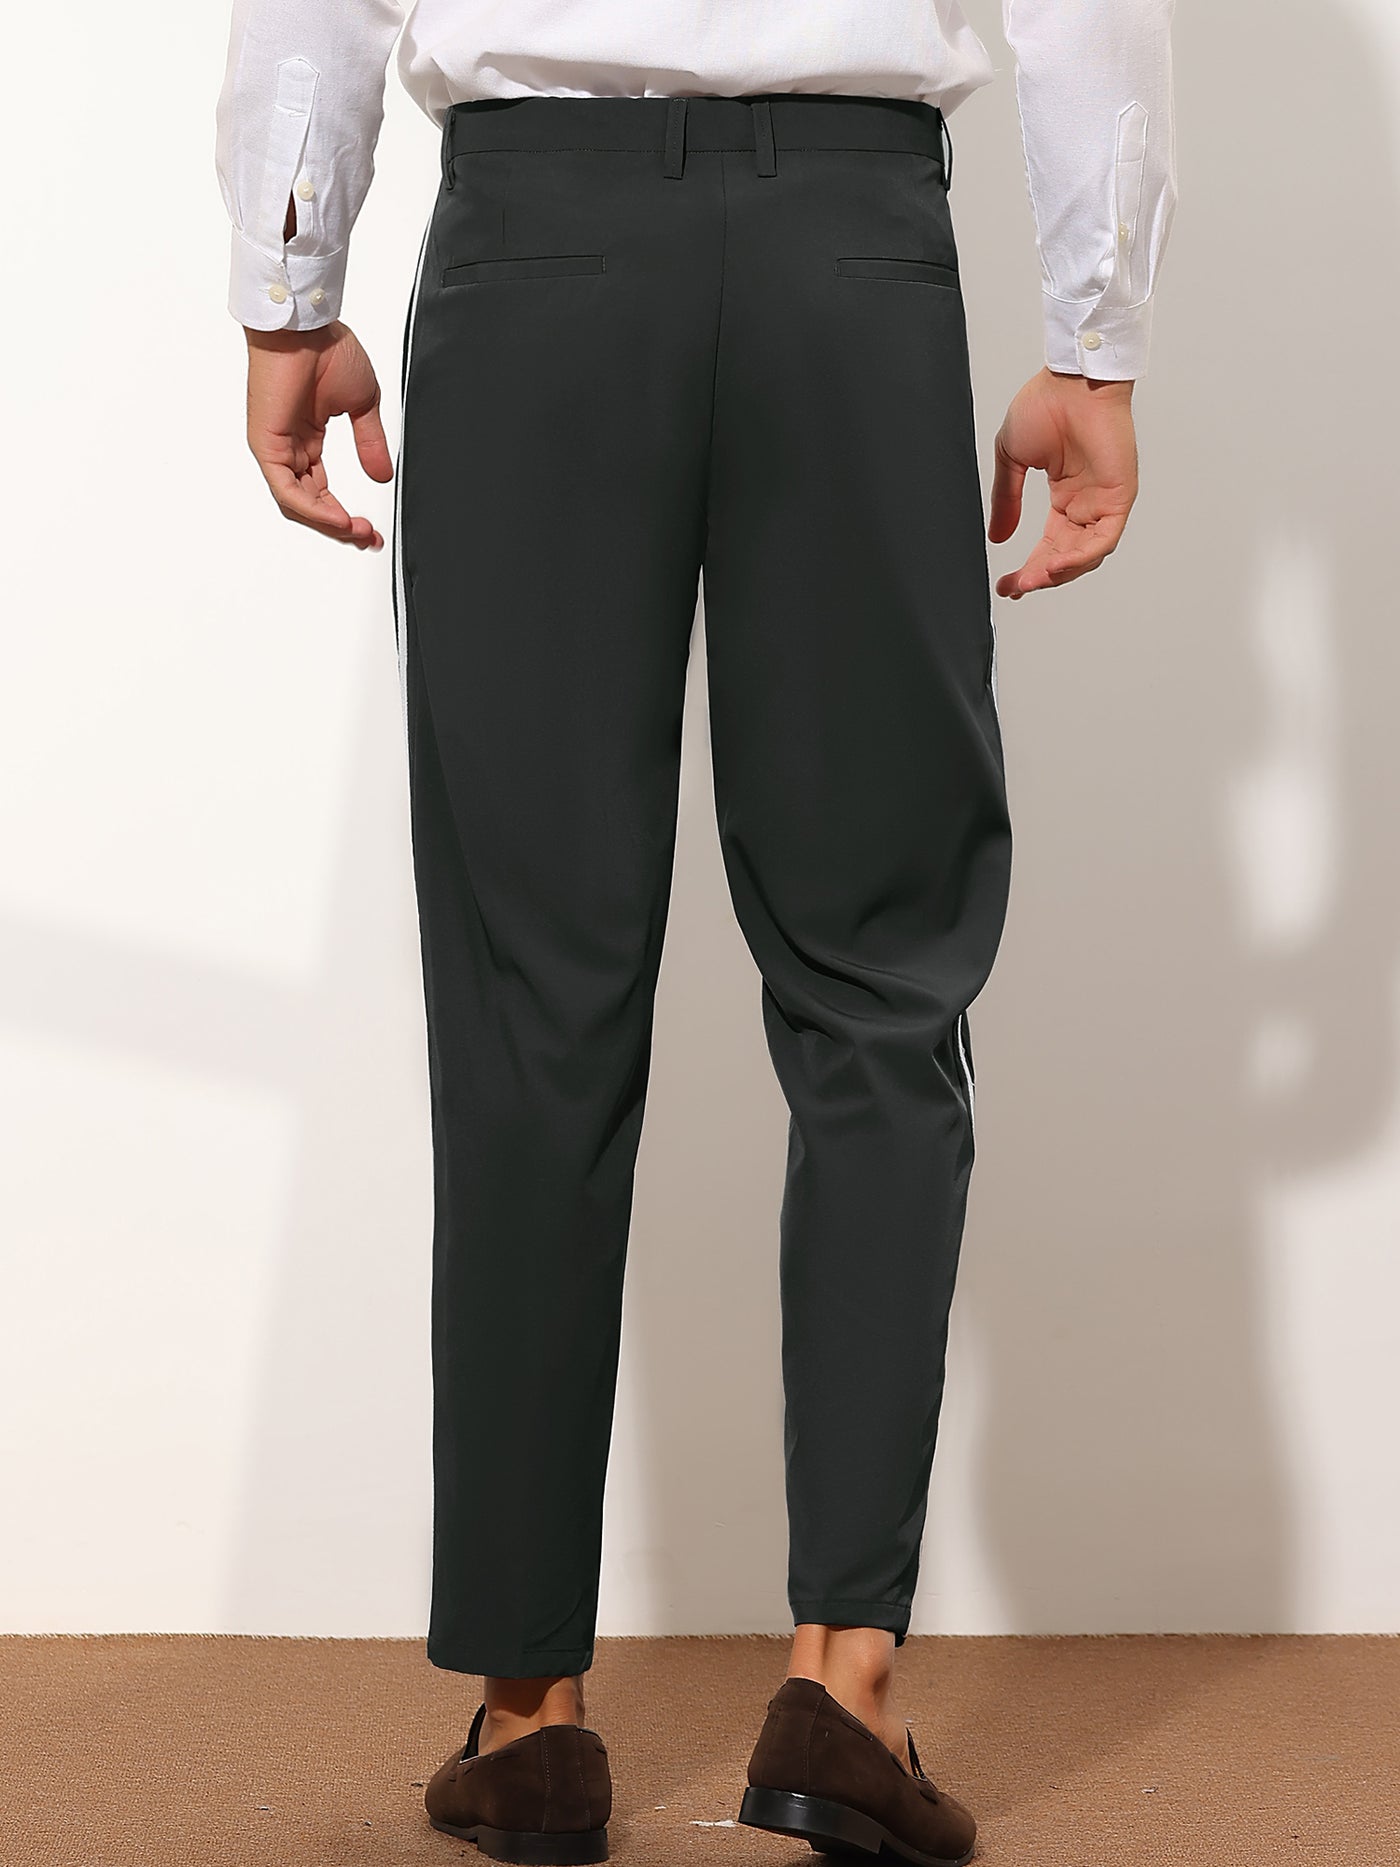 Bublédon Men's Contrast Color Flat Front Panel Striped Dress Pants